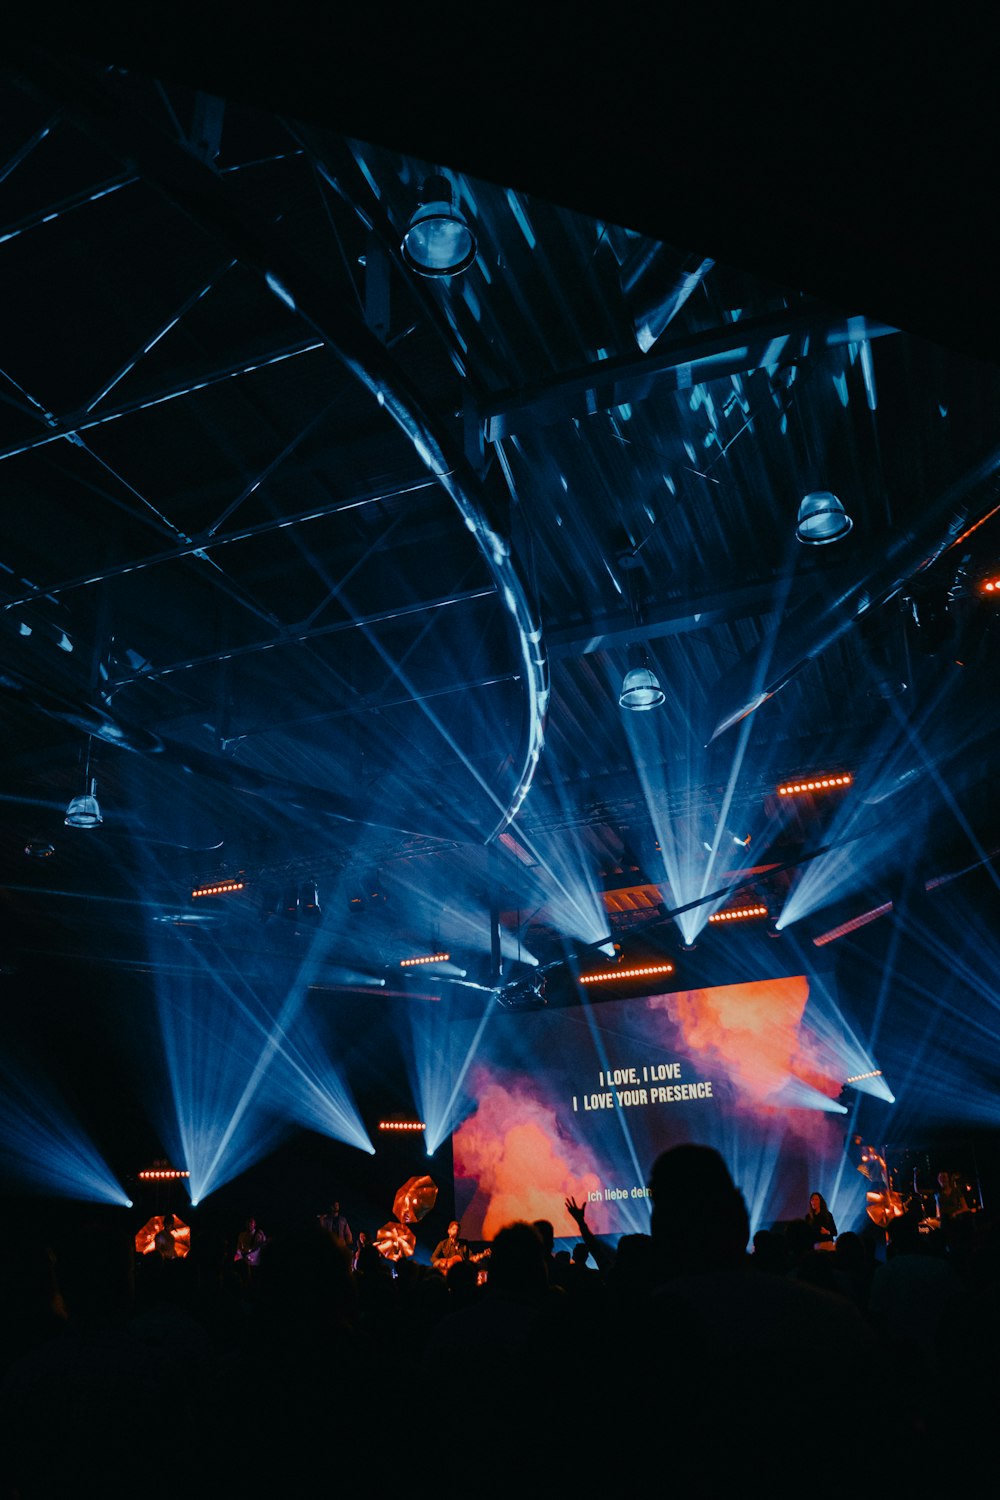 Pantalla del proyector que muestra texto en el escenario con luces